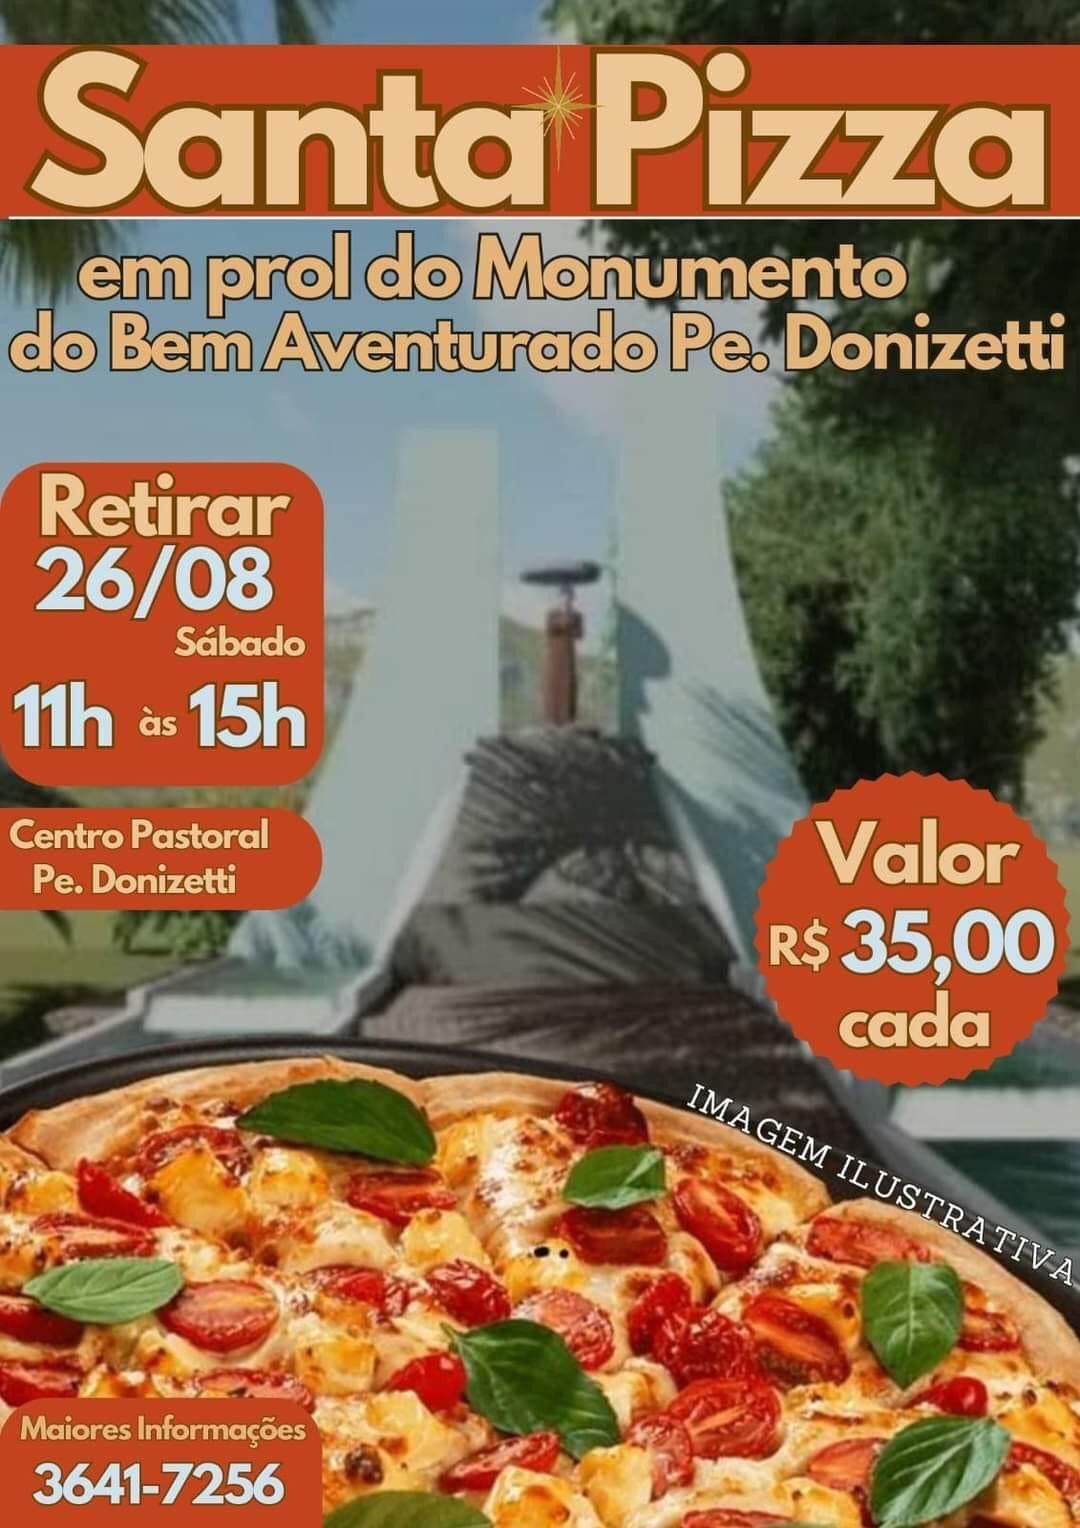 Madalena da Bom Pastor agora tem rodízio de pizza a R$ 49 e refri de graça  - Conteúdo Patrocinado - Campo Grande News